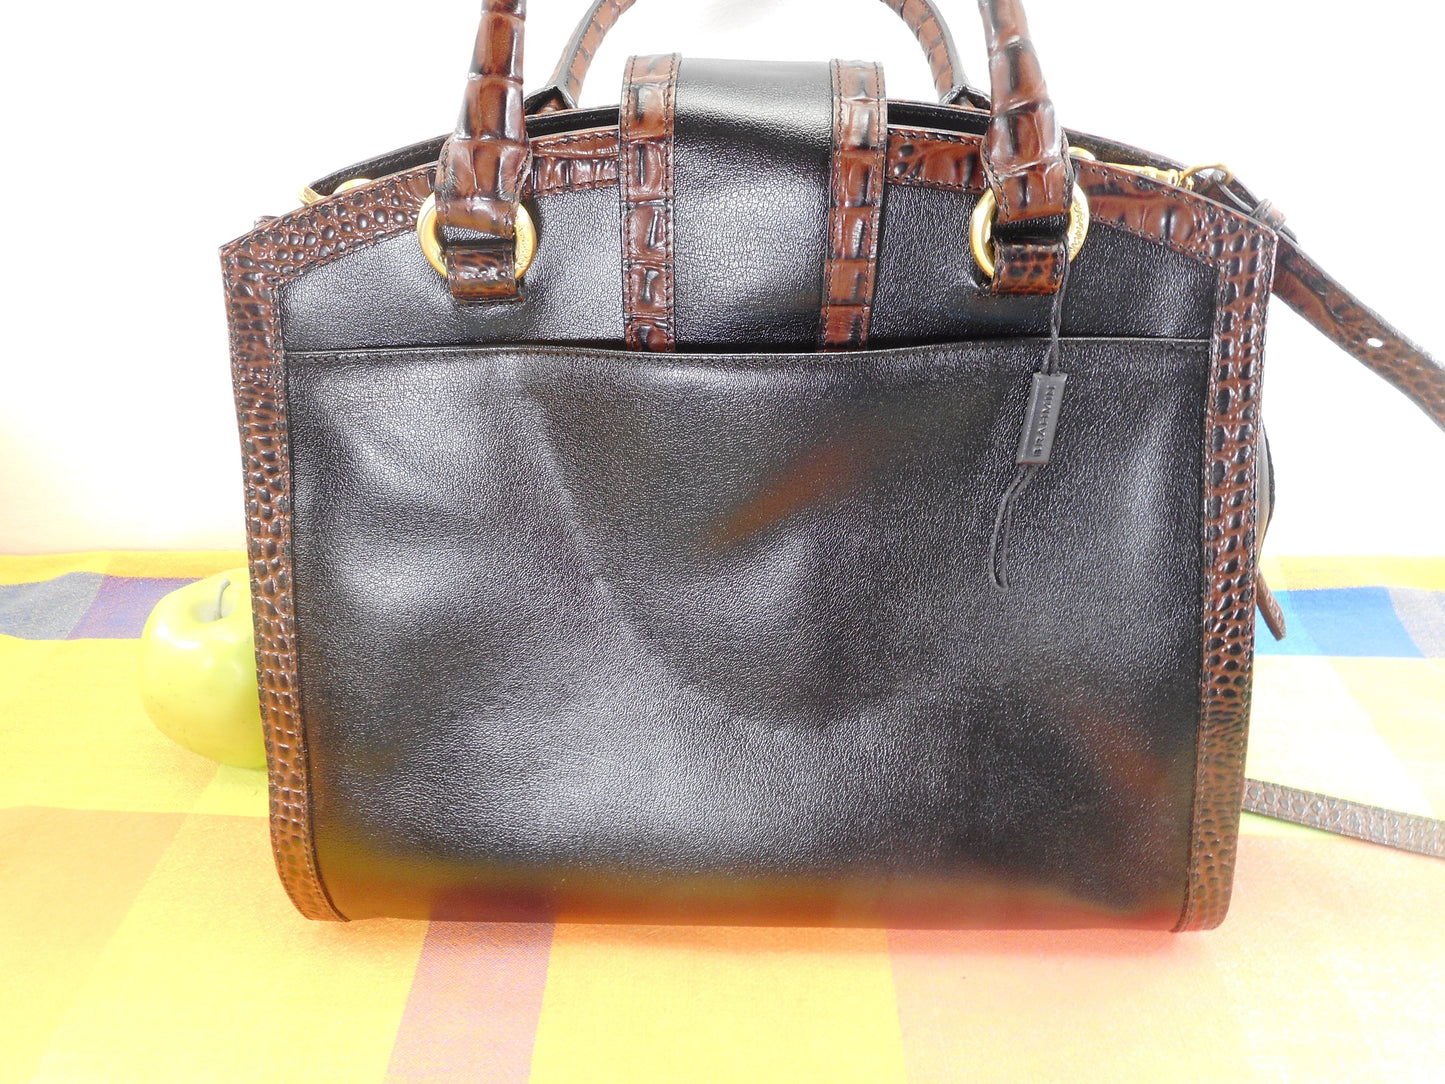 Brahmin Alligator Black Leather Satchel Handbag Shoulder Bag - Used Once EUC Brass